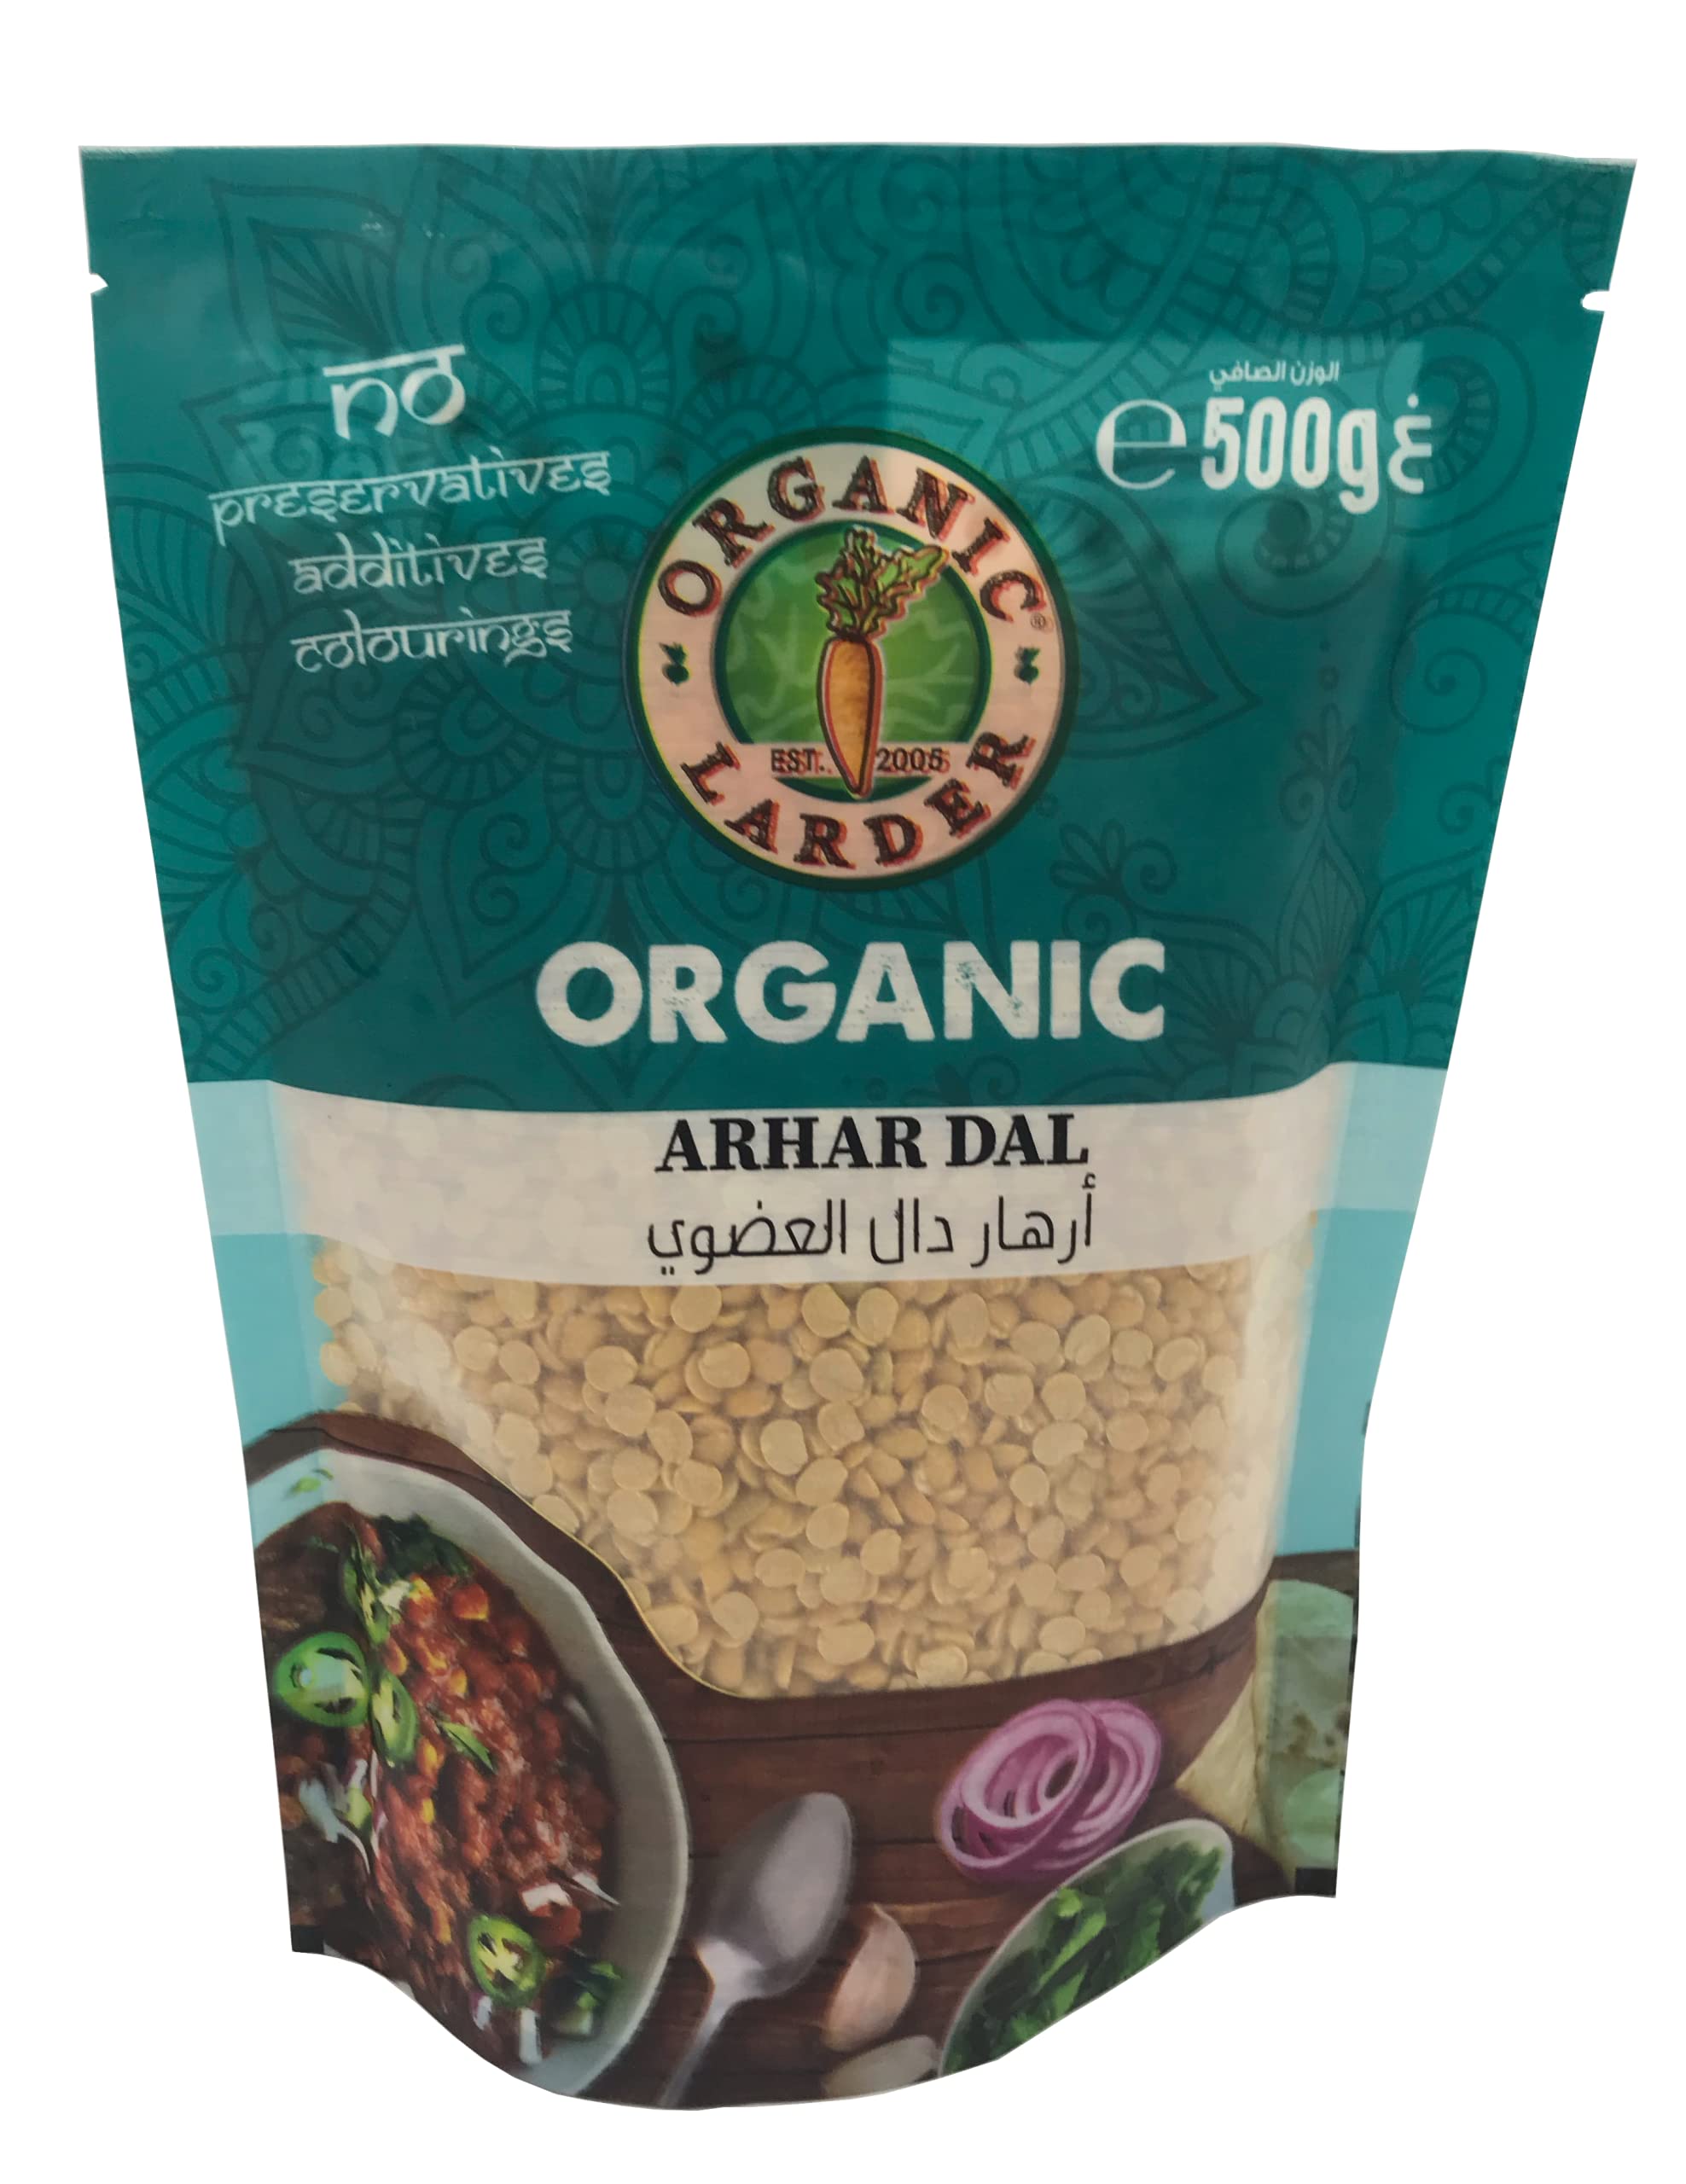 ORGANIC LARDER Arhar Dal, 500g - Organic, Vegan